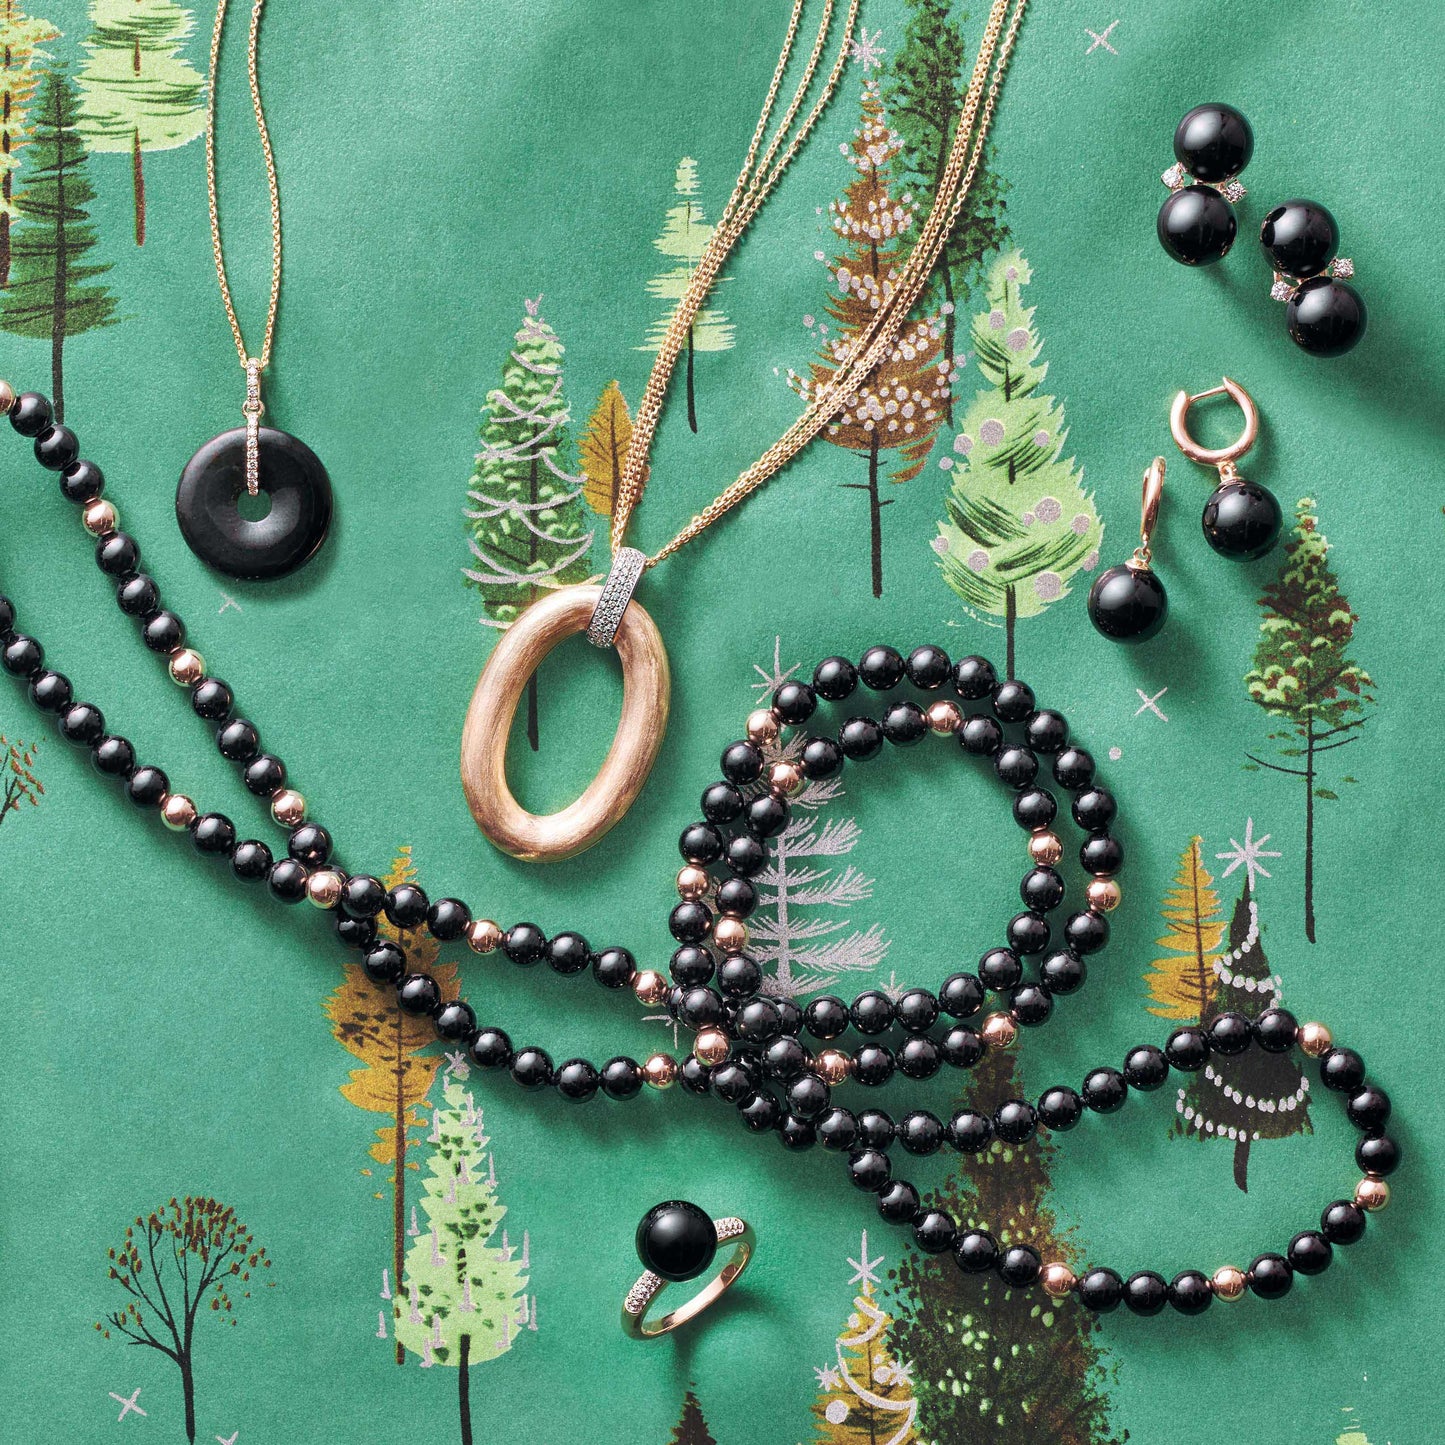 Soho Earrings in Black Jade